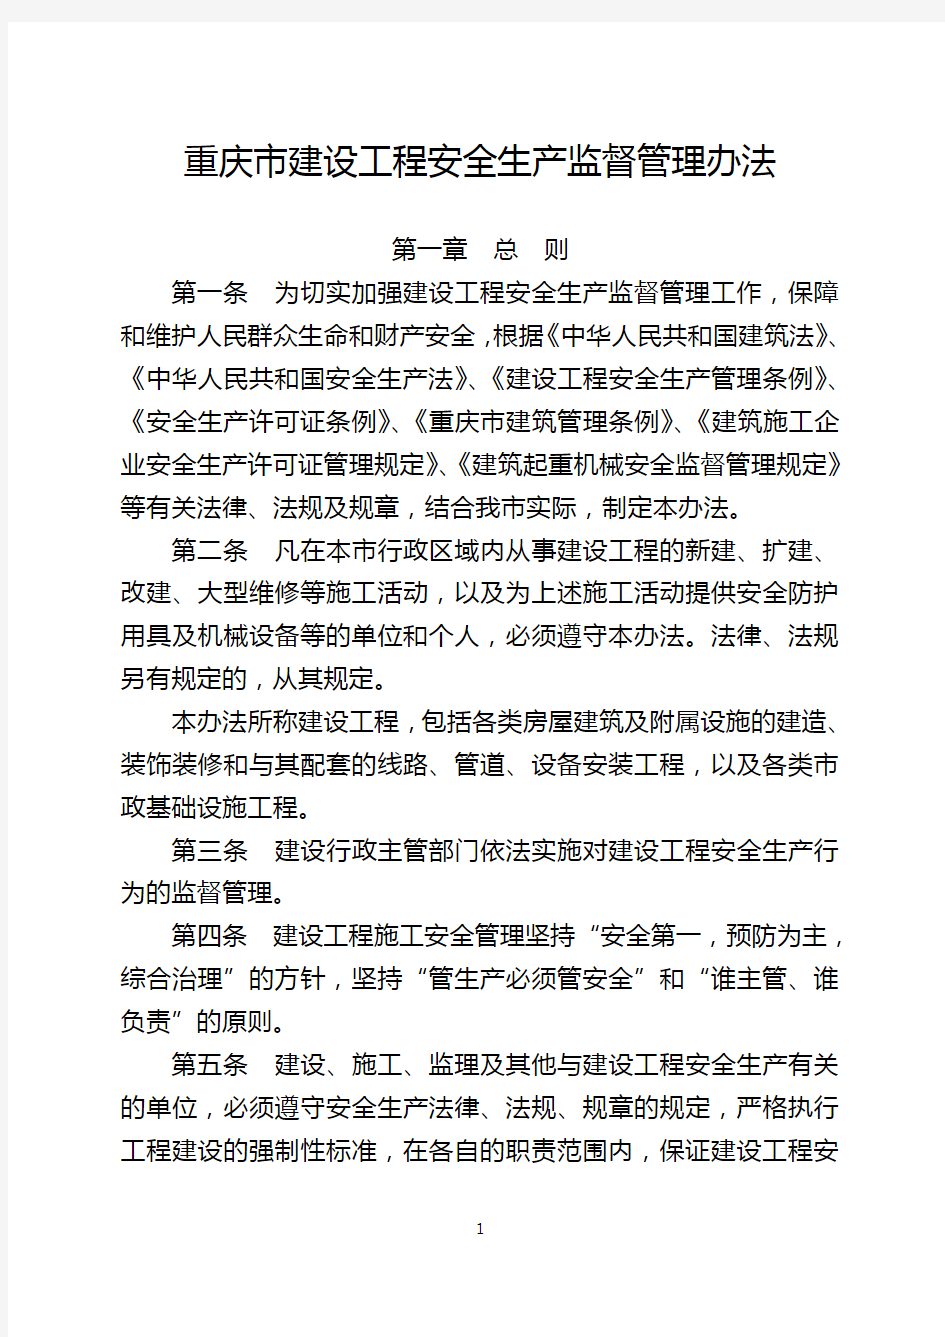 重庆市建设委员会关于印发《重庆市建设工程安全生产监督管理办法》的通知